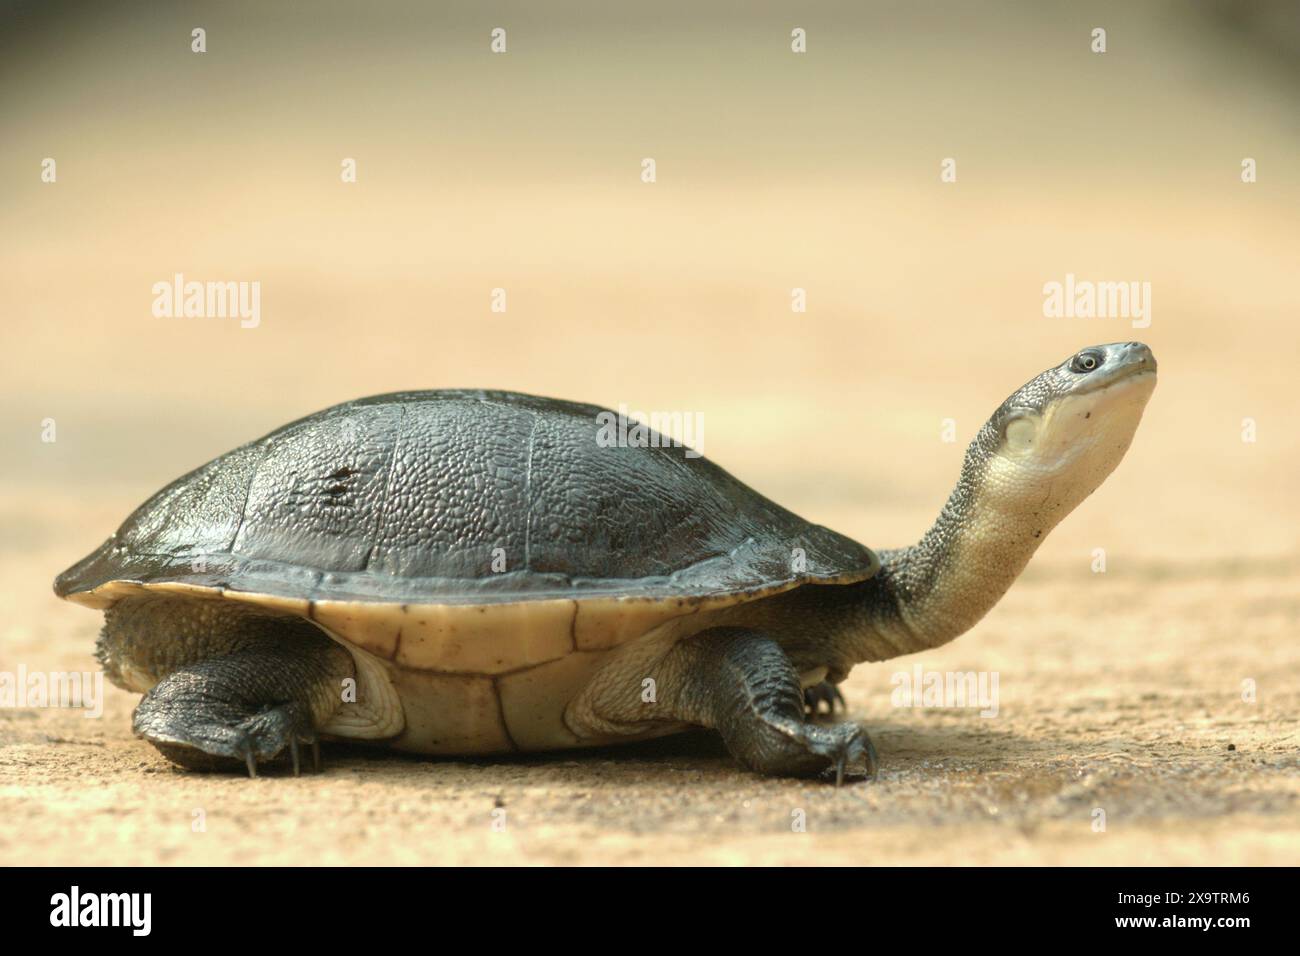 Eine seltene und bedrohte Süßwasserschildkrötenart, die endemische Schlangenhalsschildkröte (Chelodina mccordi) der vom Aussterben bedrohten Roten Insel. Stockfoto